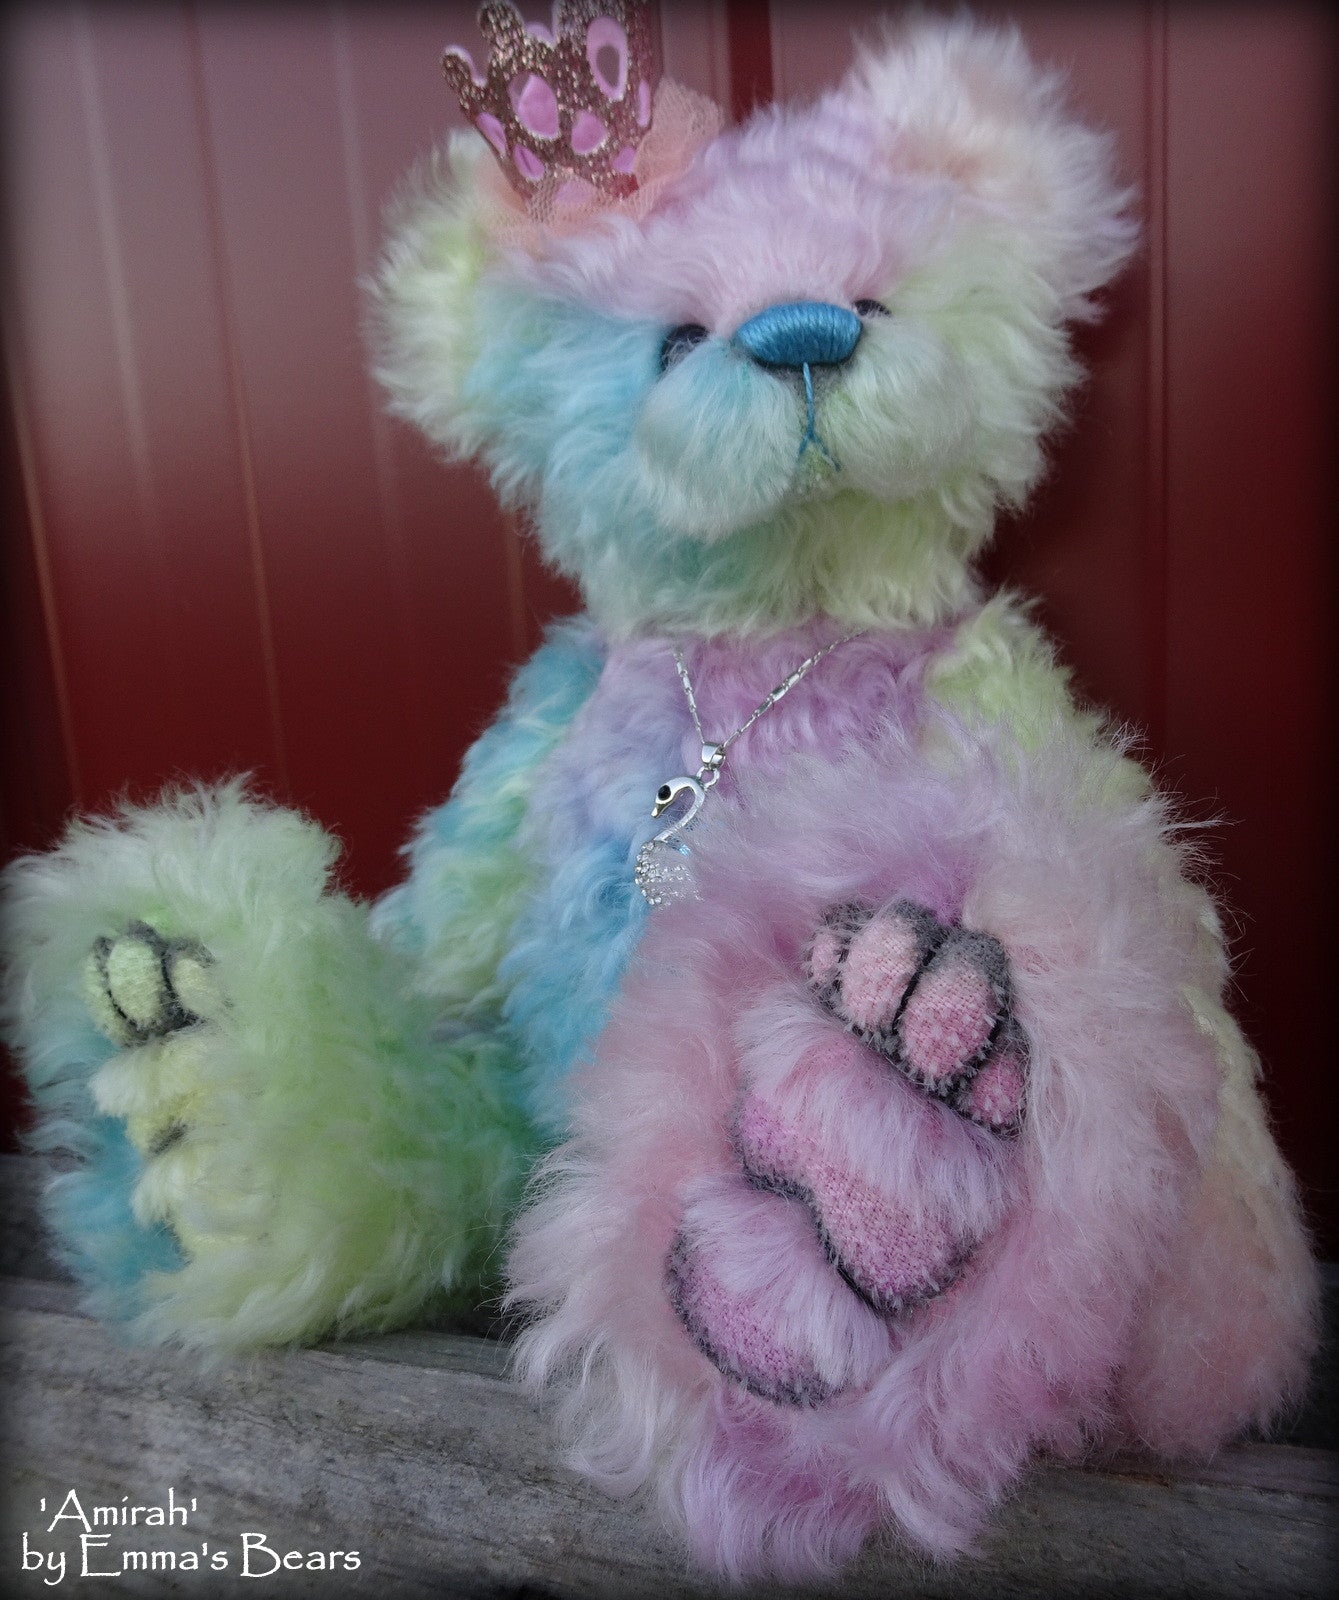 Amirah - 12" hand dyed rainbow mohair Artist Bear by Emmas Bears - OOAK